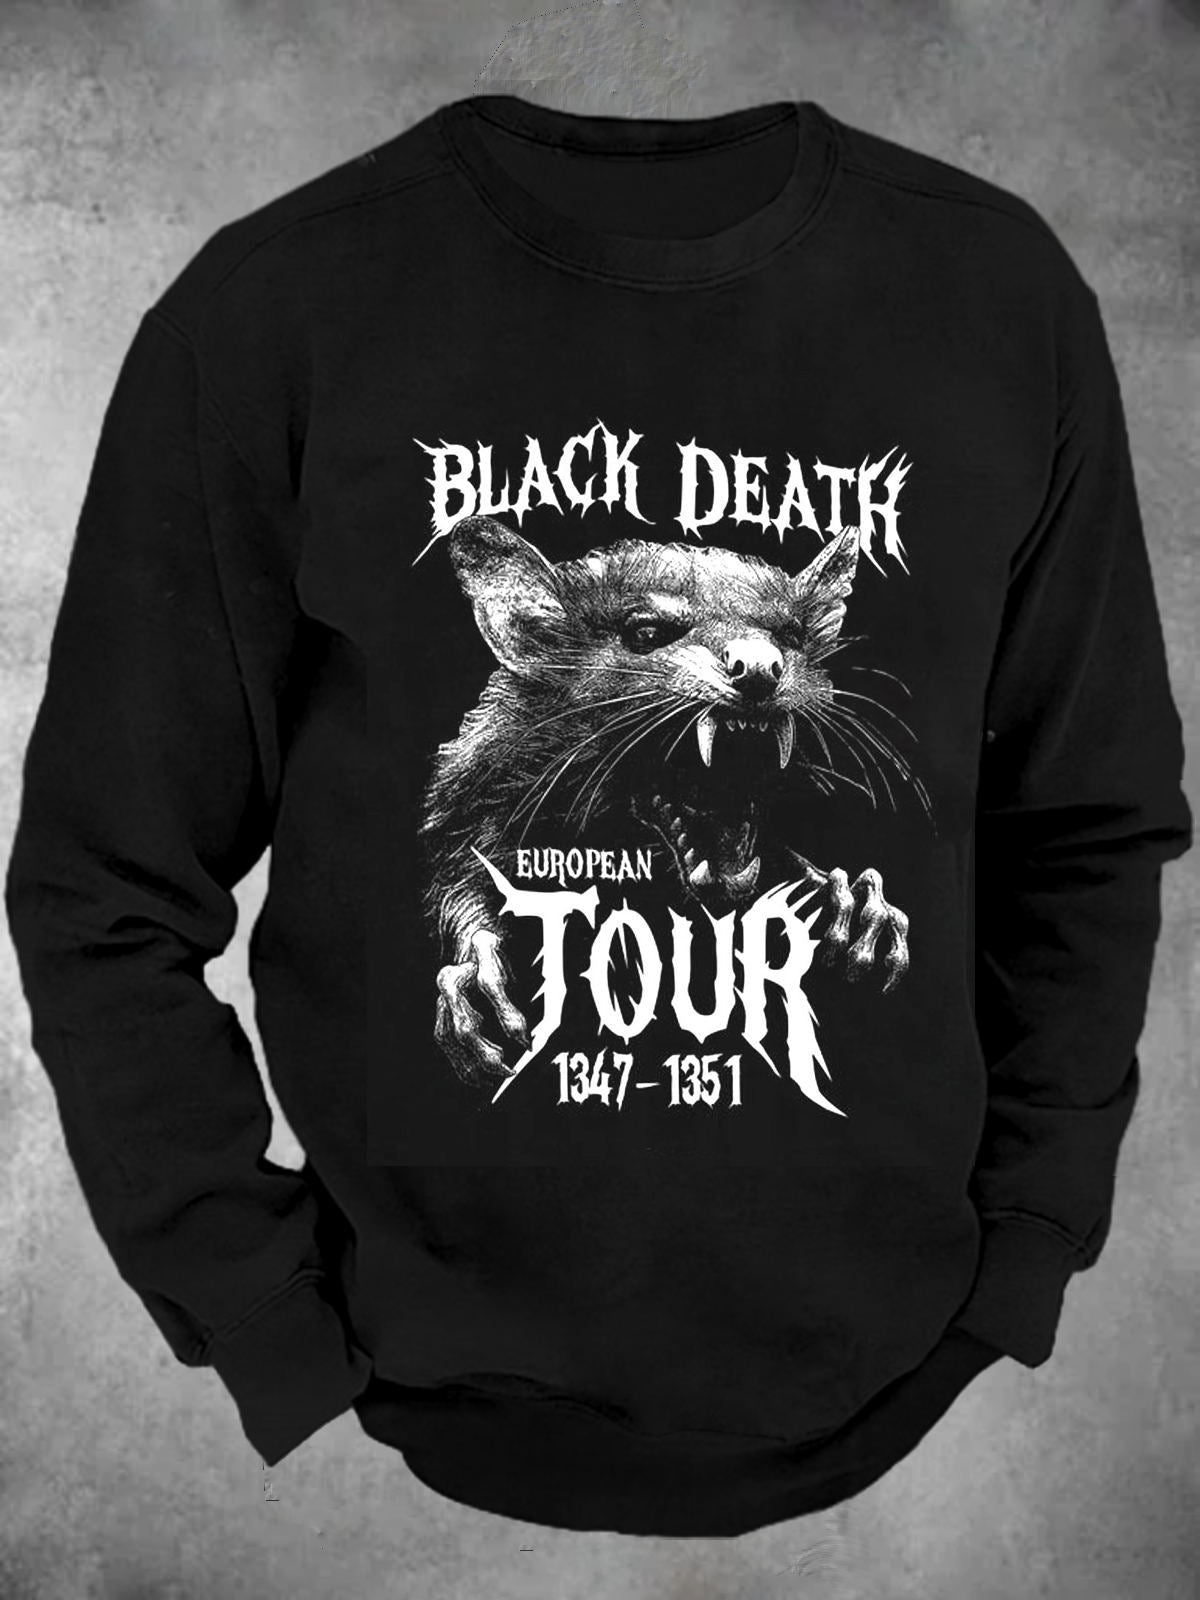 Black Death European Tour Crew Neck Long Sleeve Men's Top